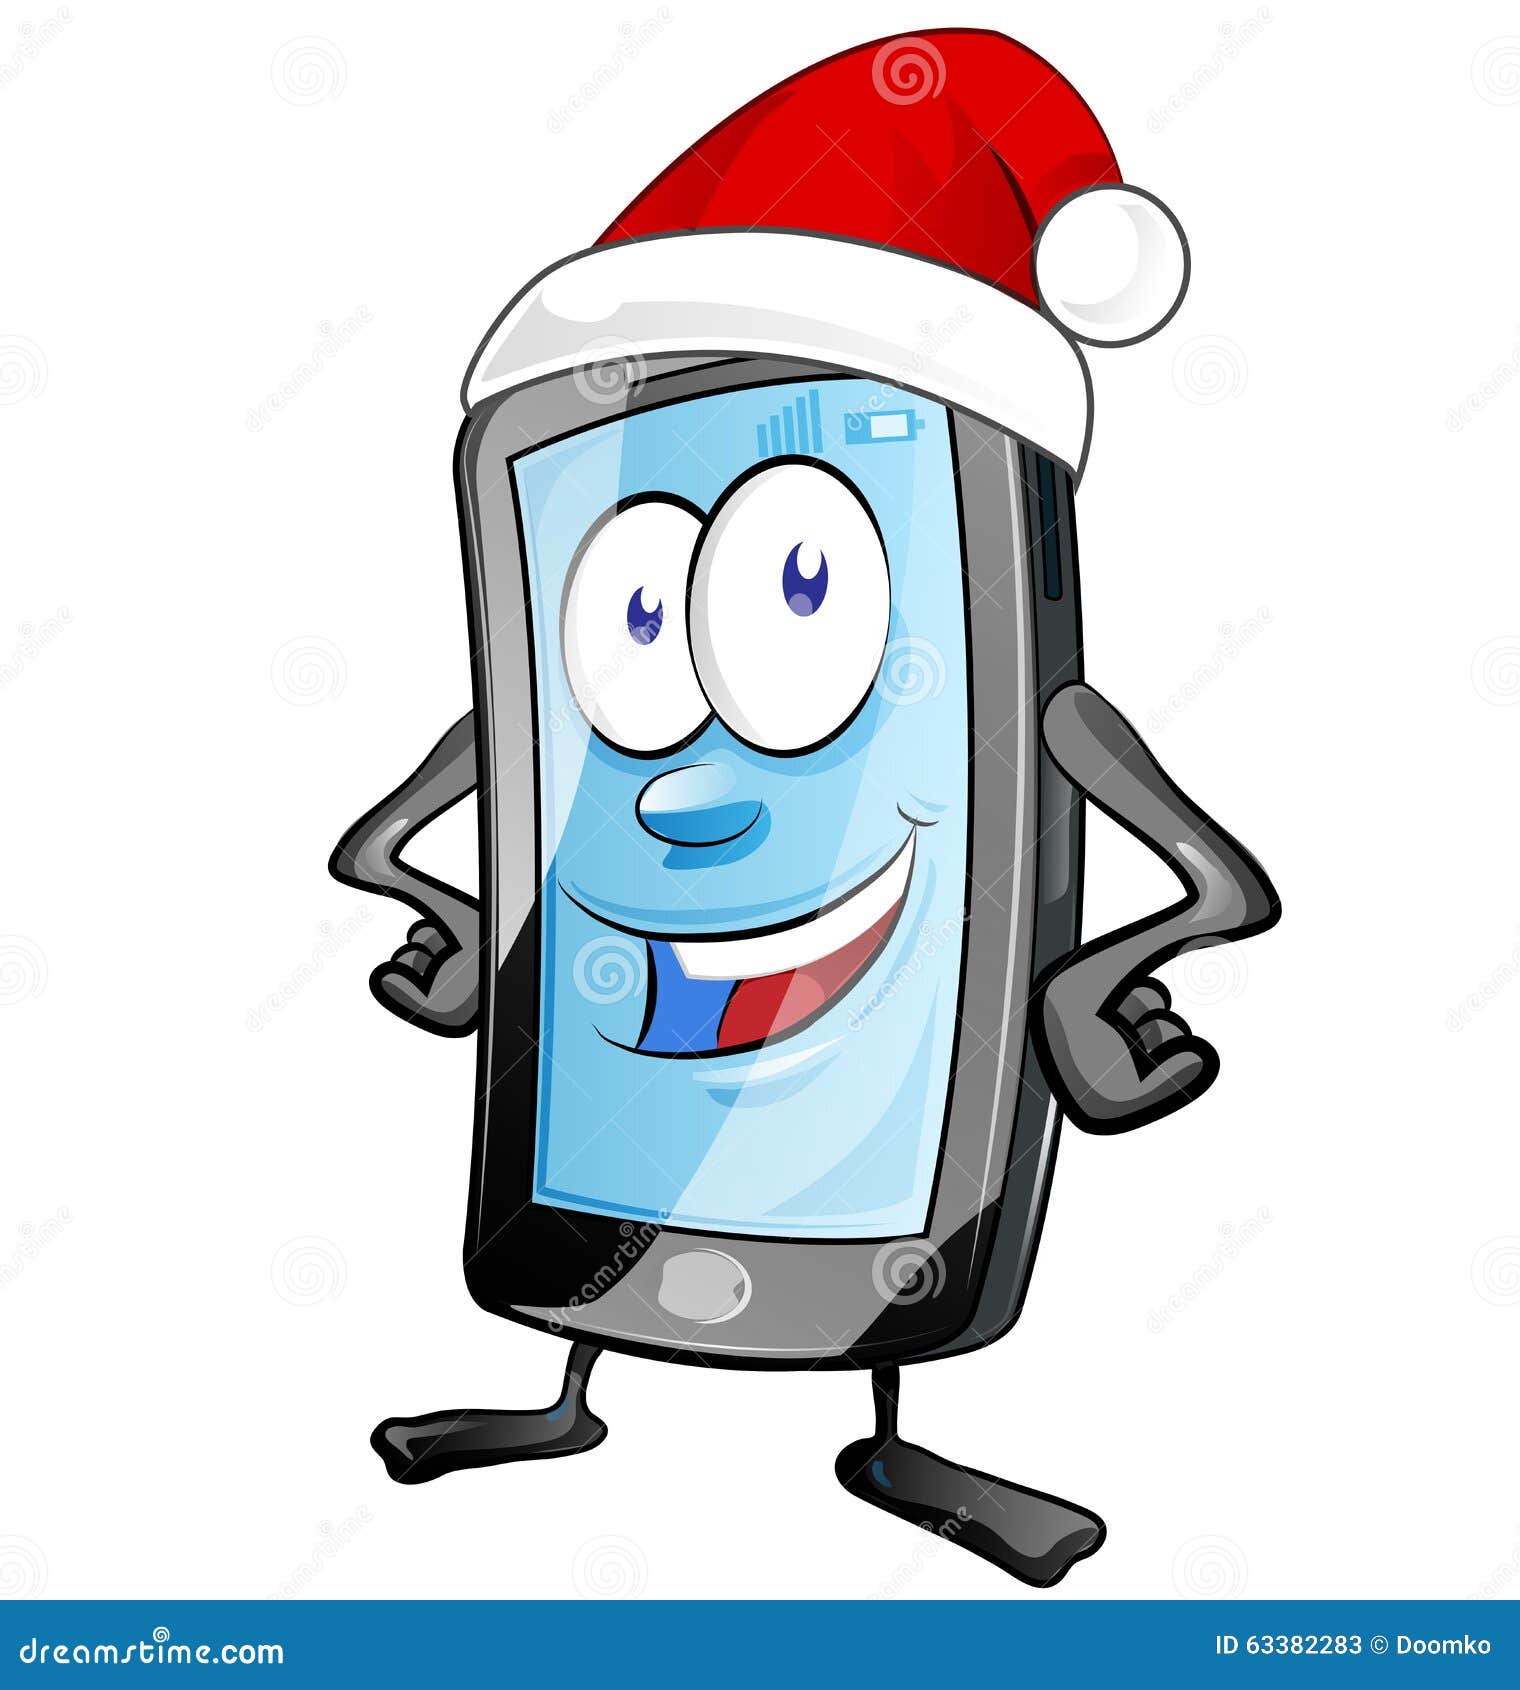 Fun Christmas Mobile Cartoon Stock Vector - Image: 63382283